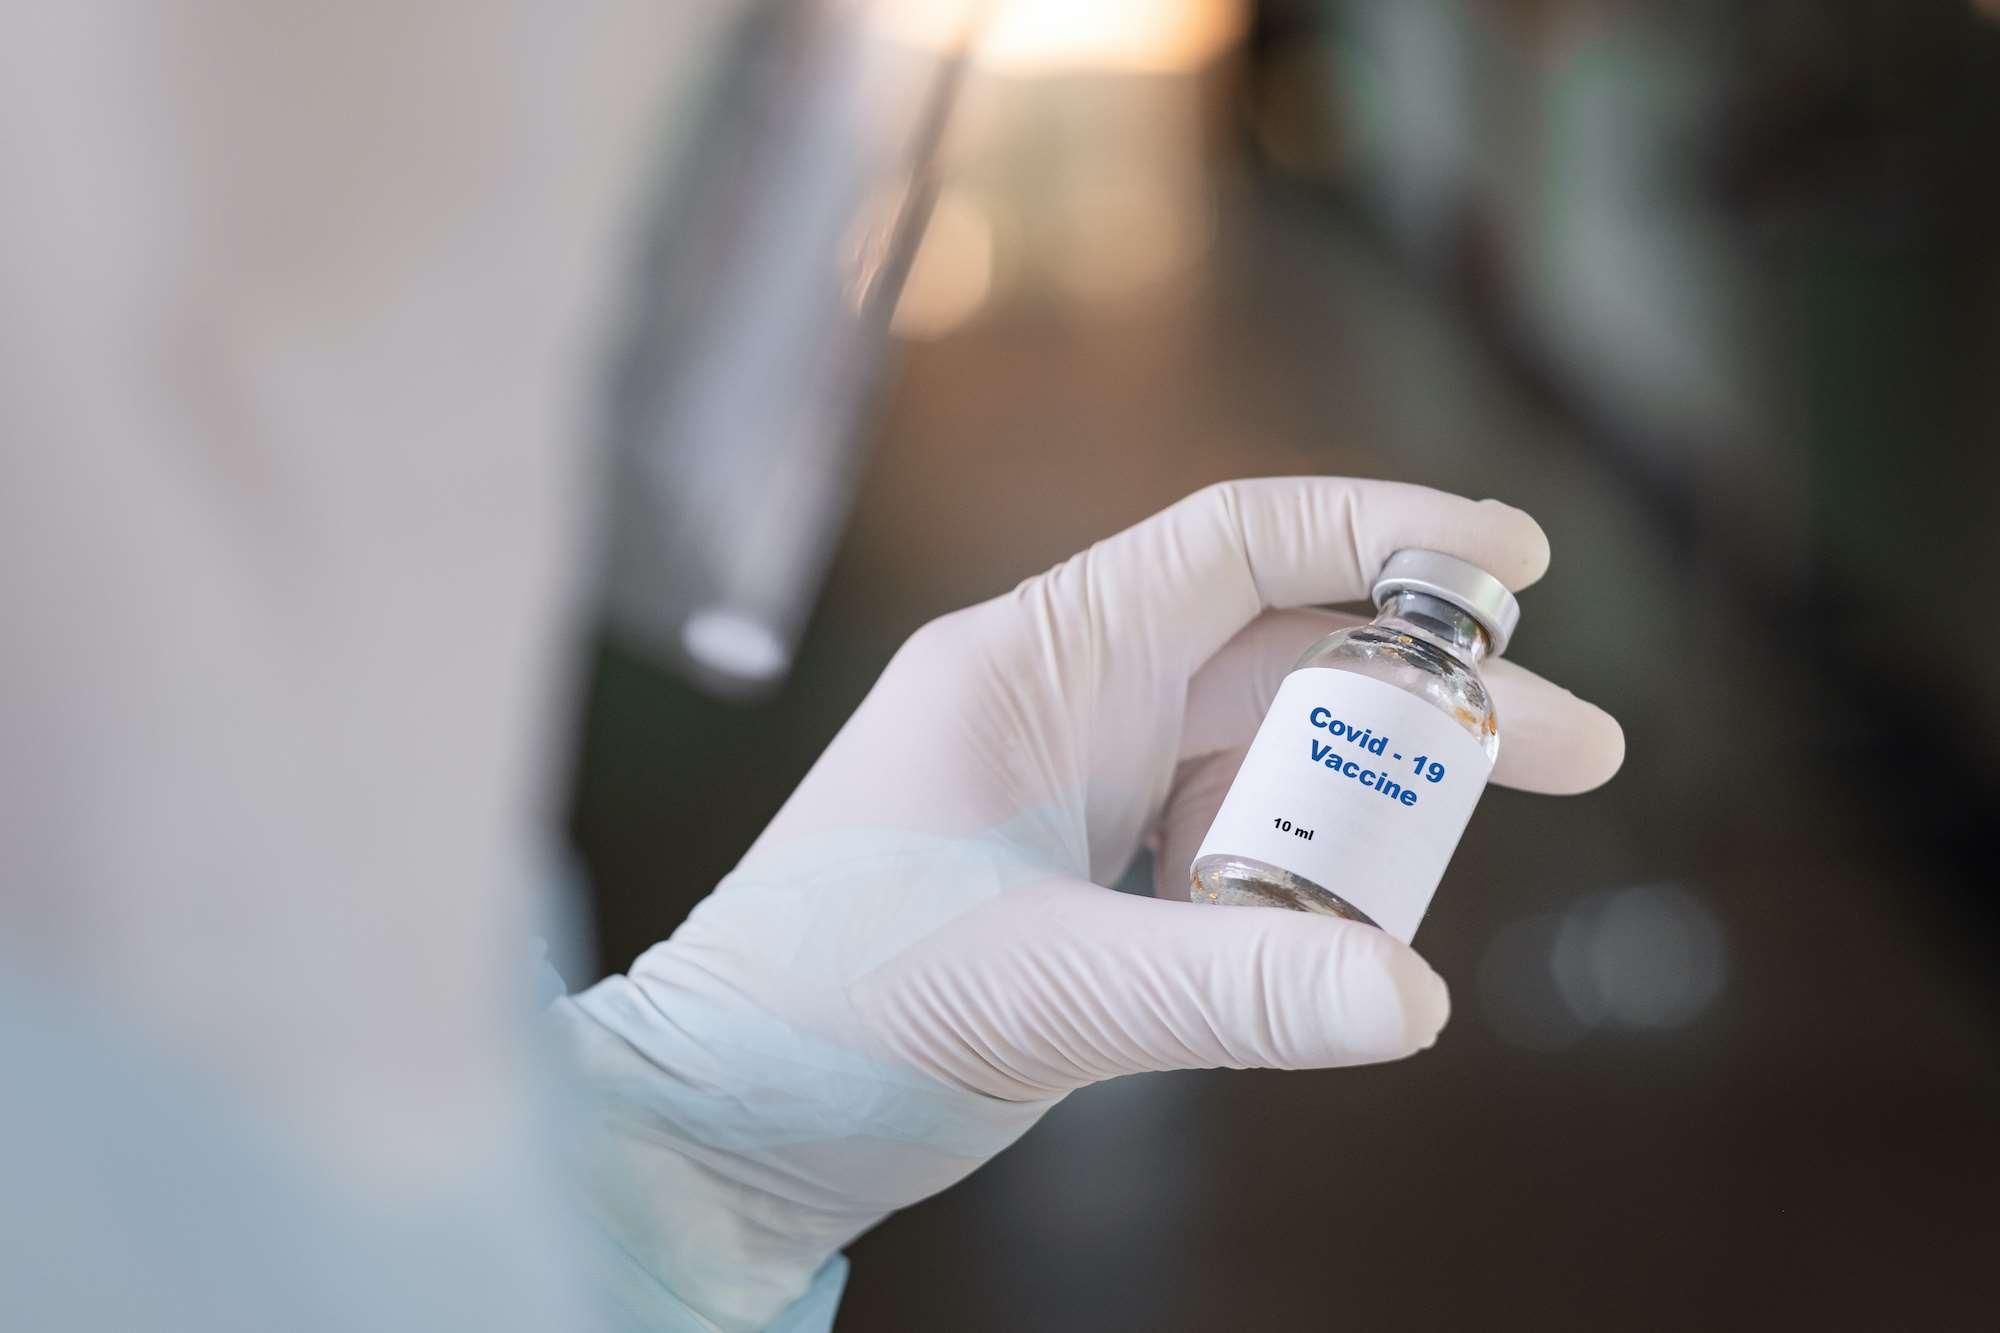 Оксфордський університет визнав проблему з вакциною від коронавірусу: помилилися з дозою

